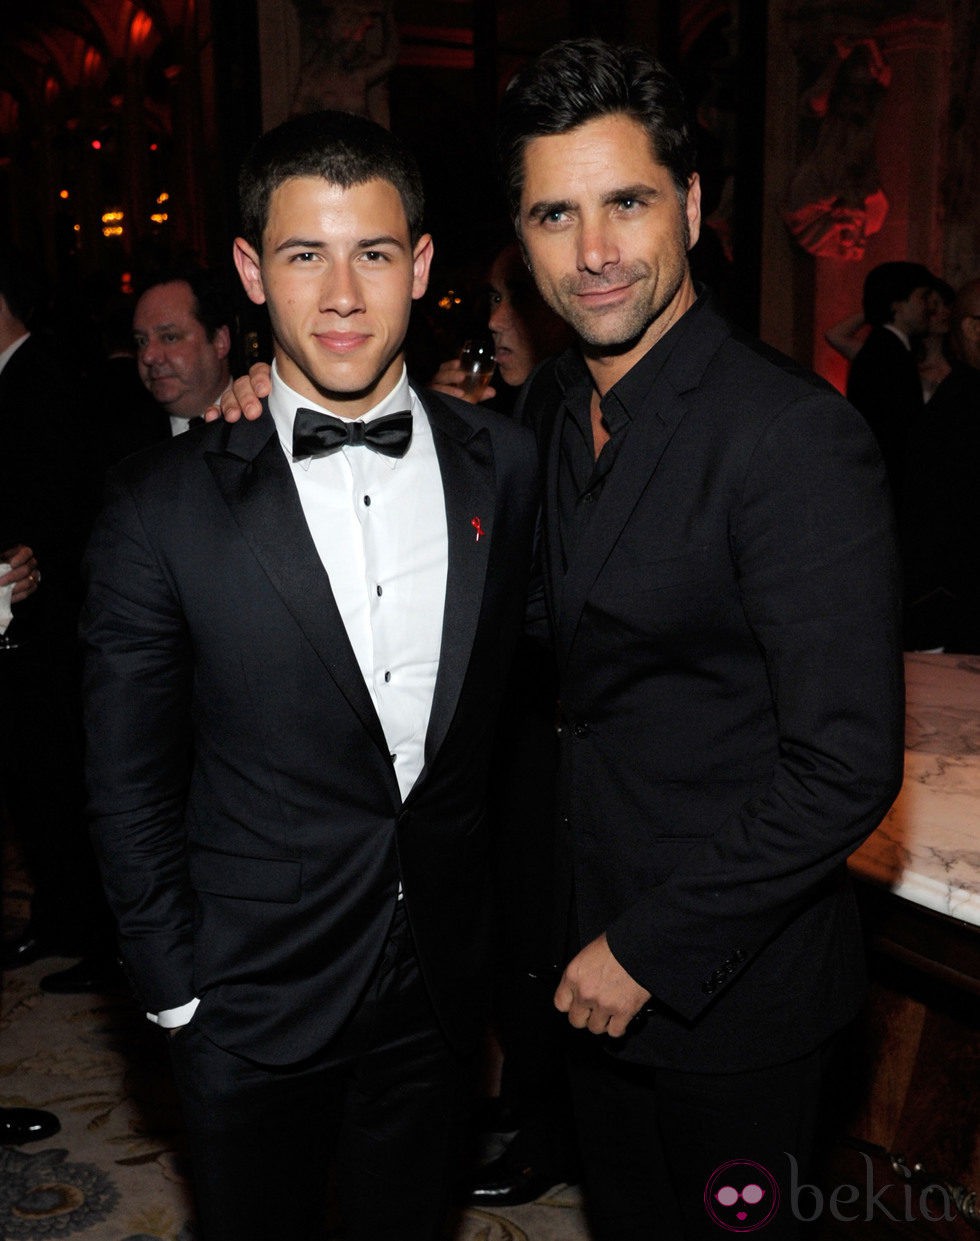 Nick Jonas y John Stamos en los Premios Tony 2012